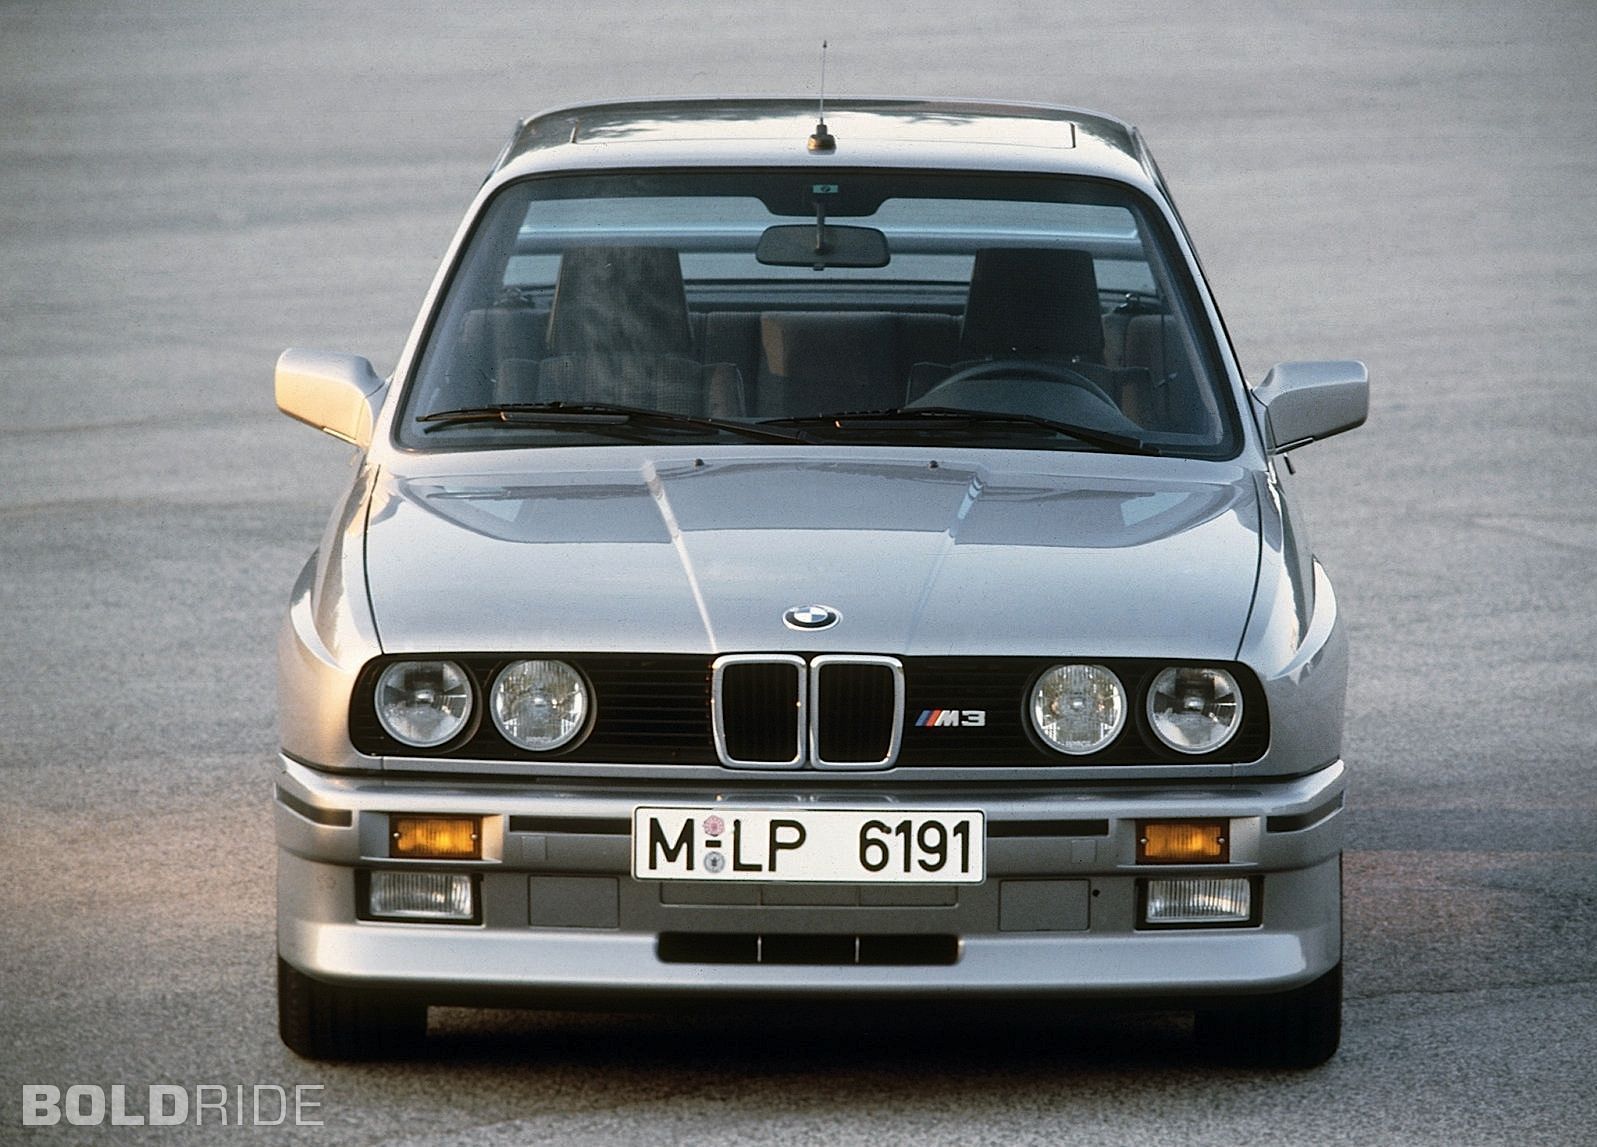 Wheels Wallpaper: BMW M3 E30 Coupe - Boldride.com